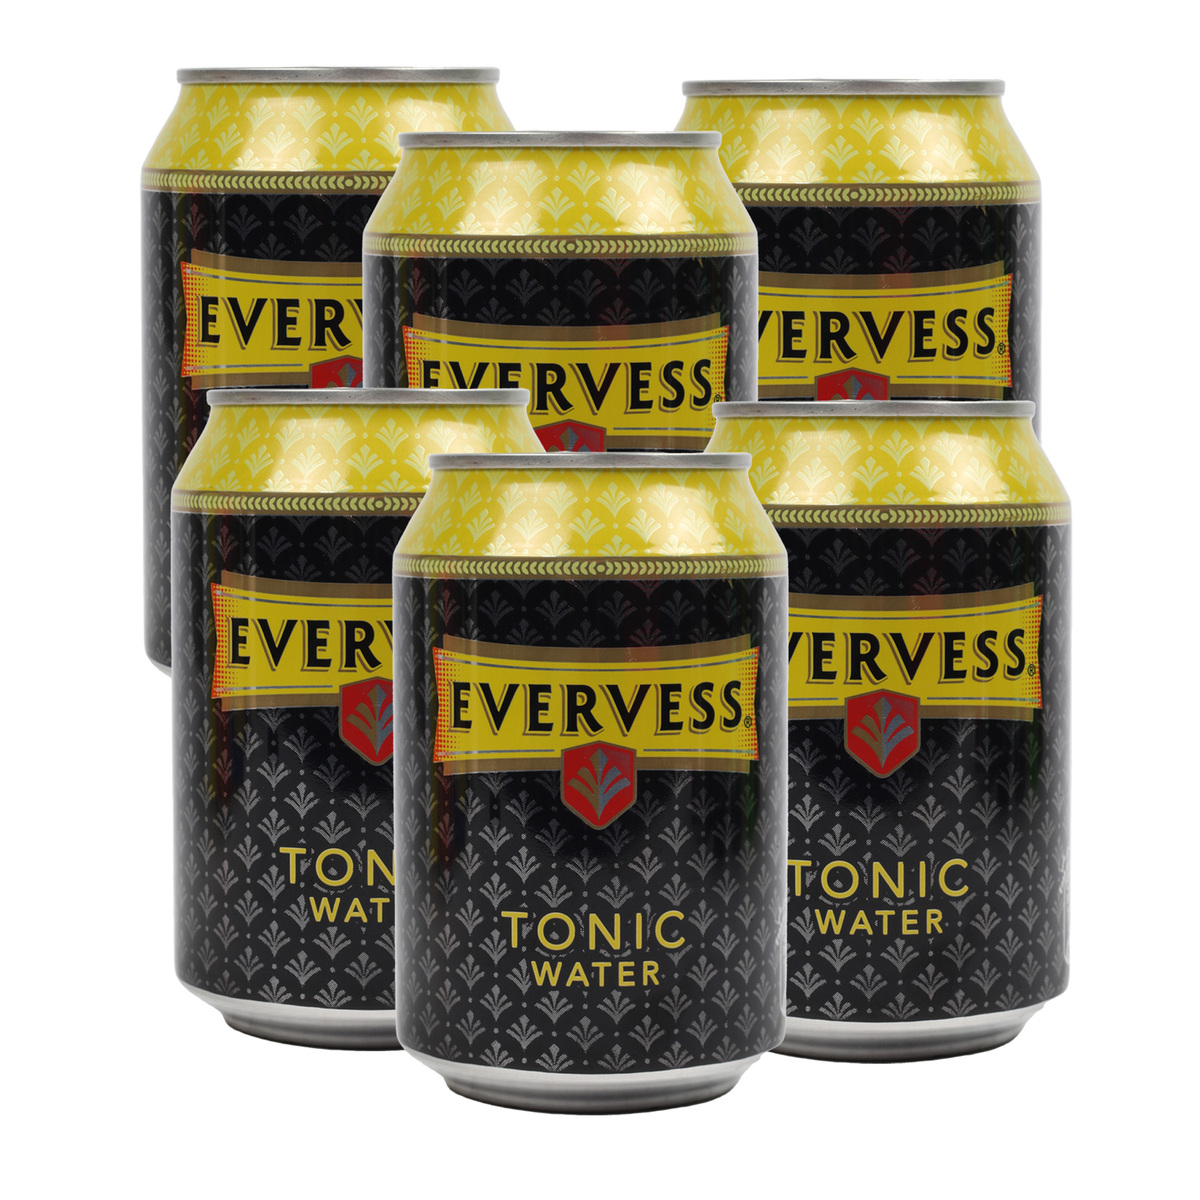 Evervess Tonic Water 300 ml